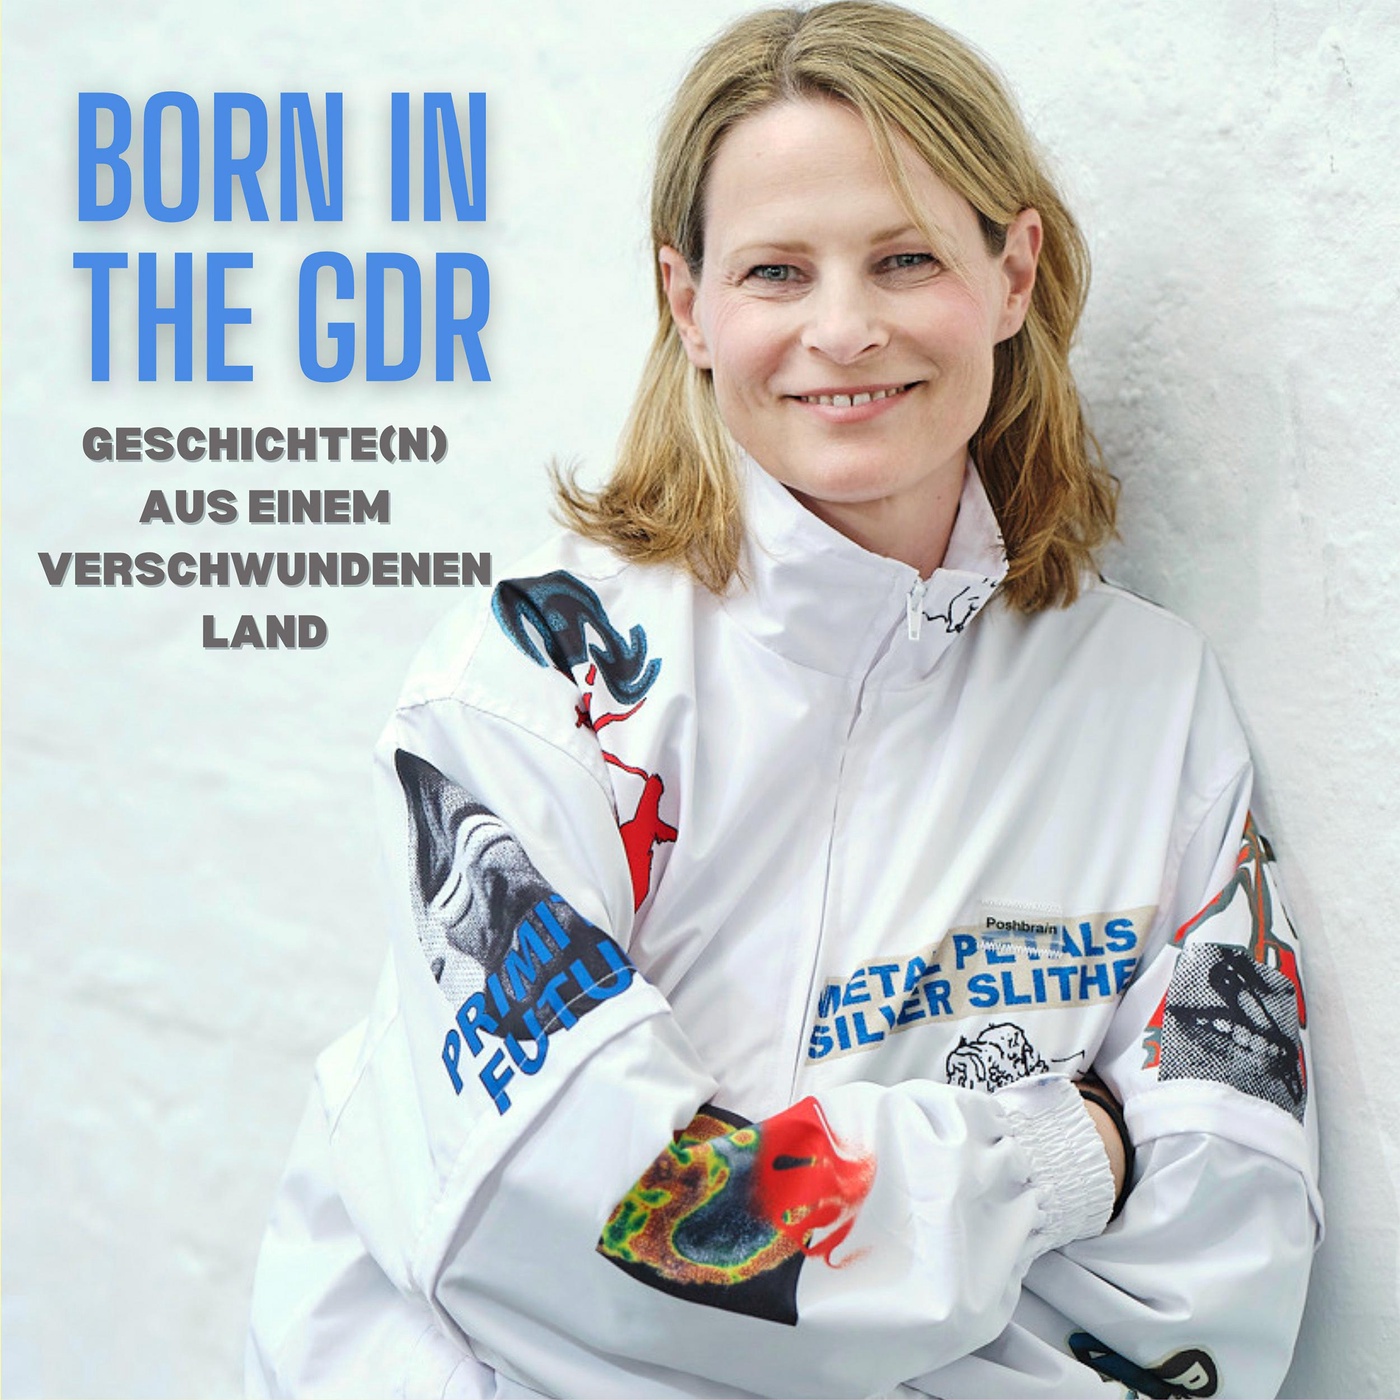 Born in the GDR: Geschichte(n) aus einem verschwundenen Land